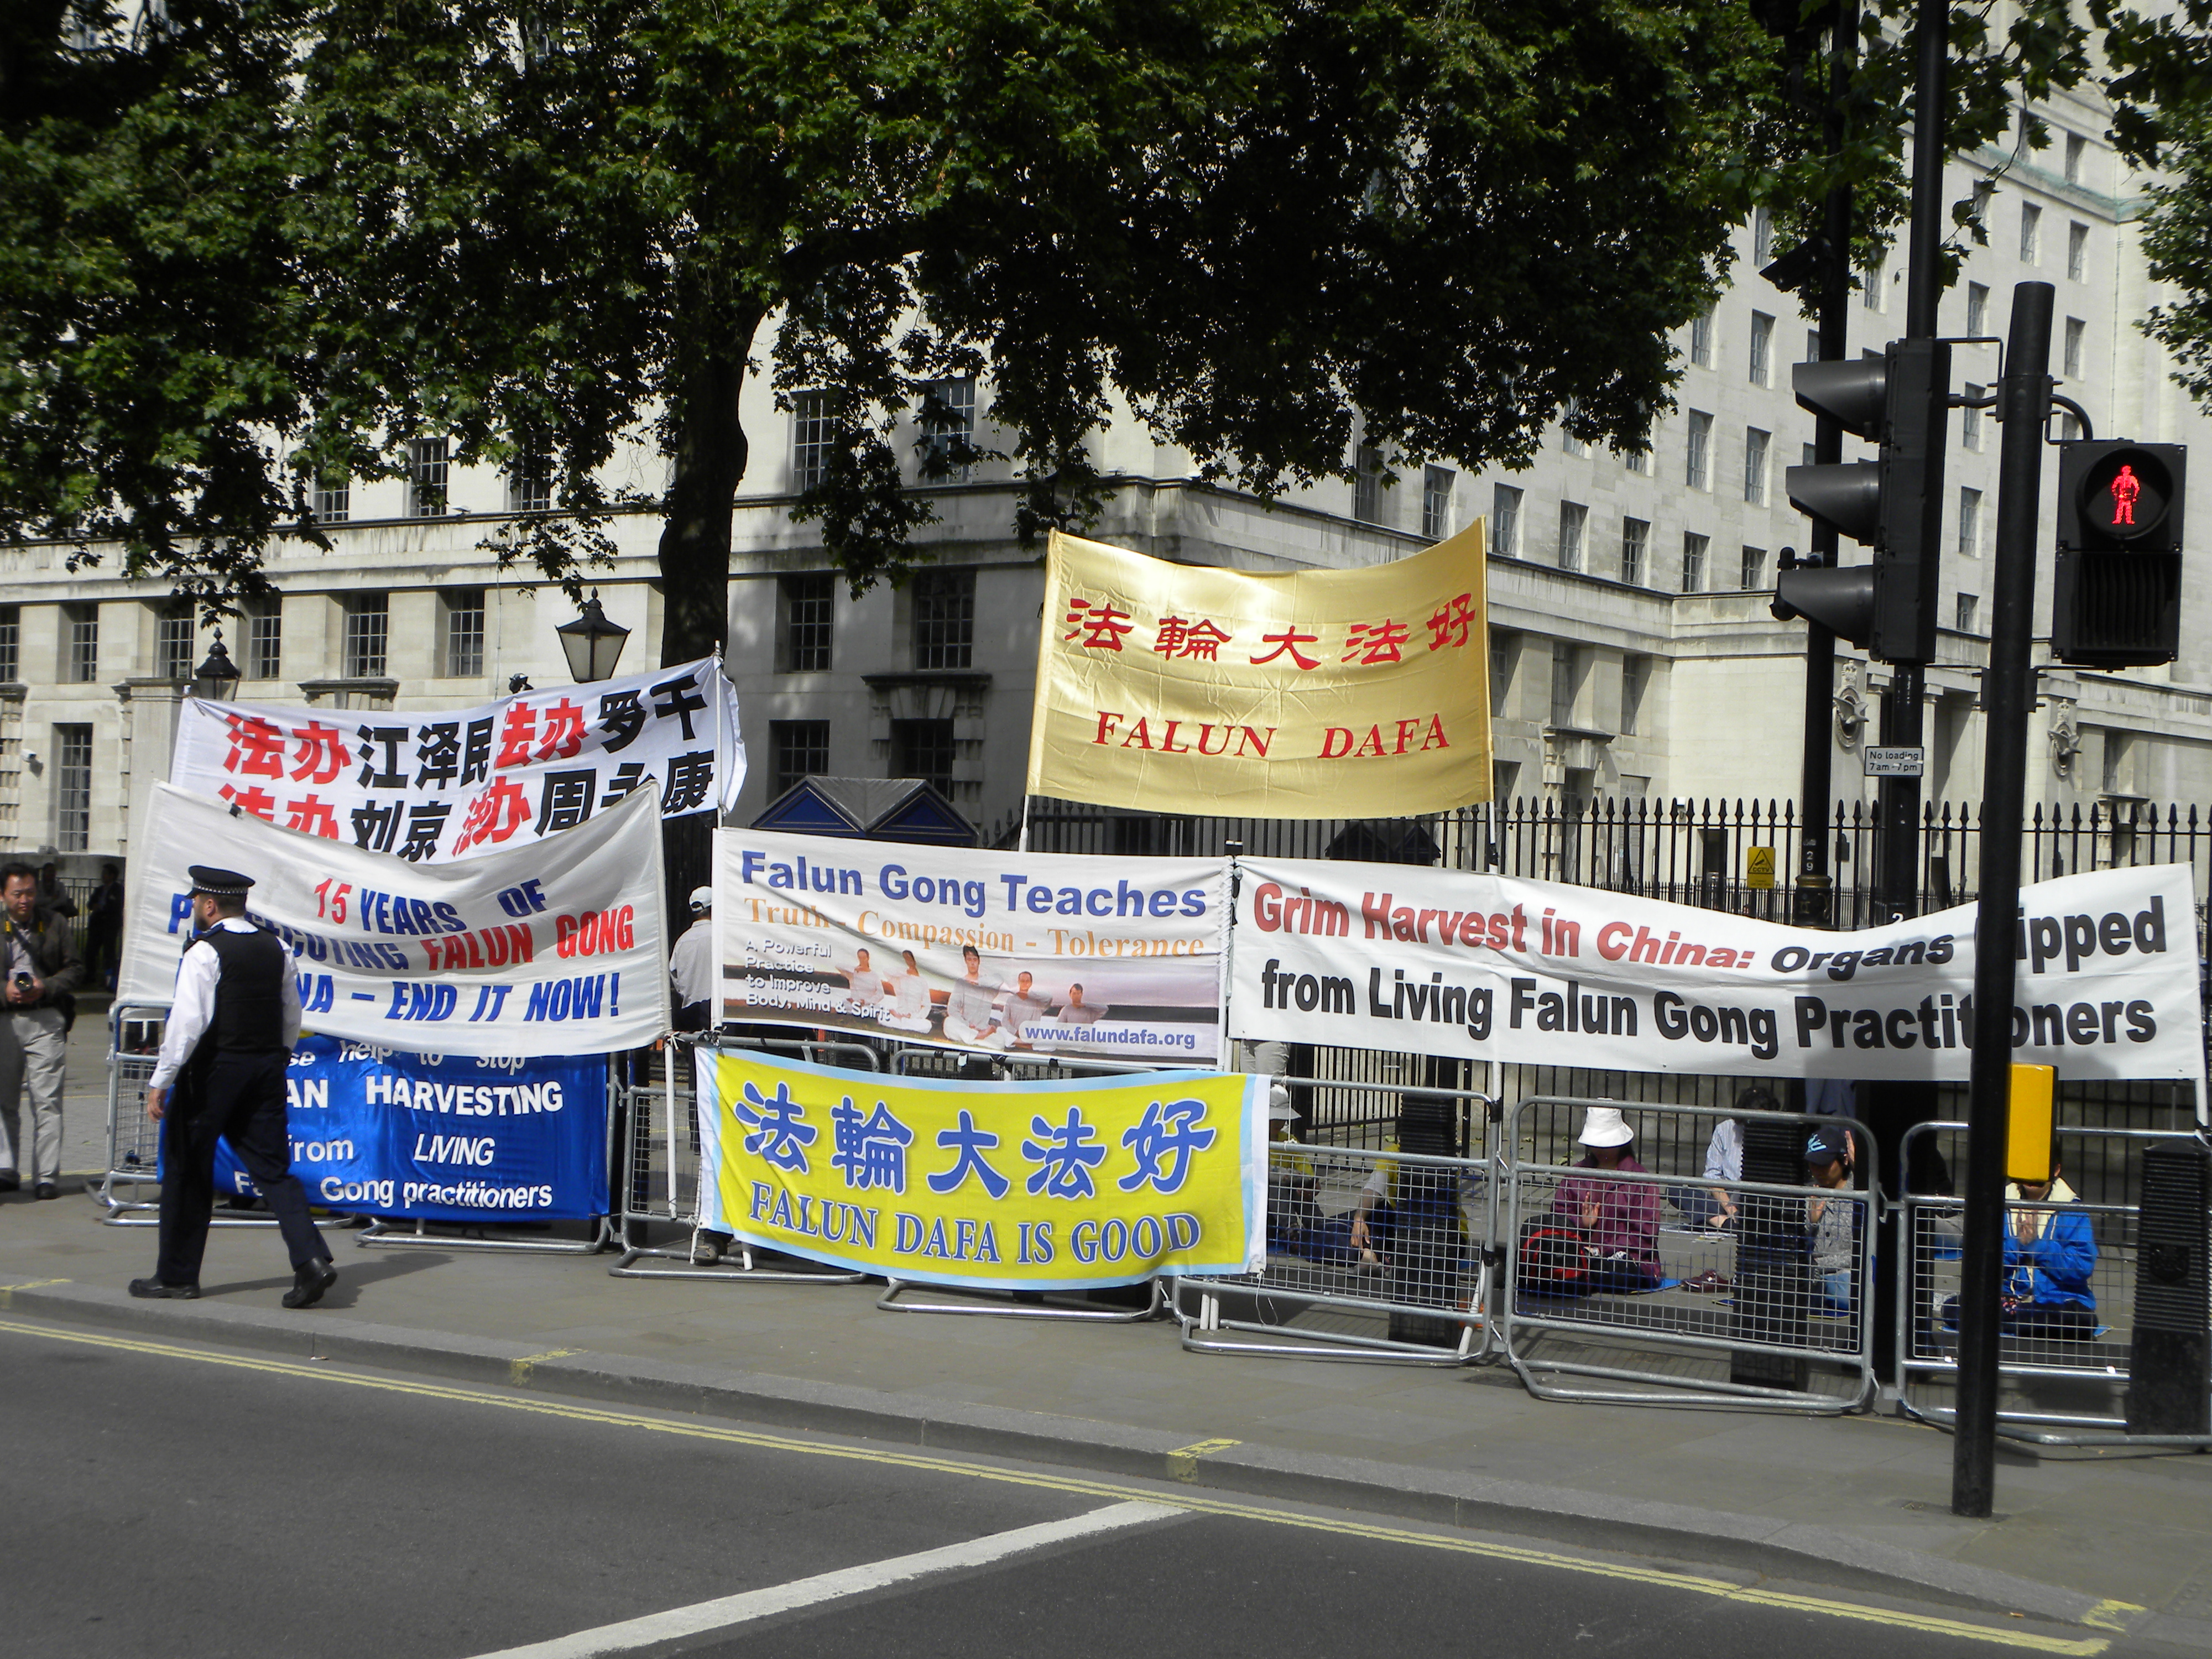 Podobná skupina aktivistů a její protest 17. června 2014 poblíž Downing Street v Londýně odsuzující perzekuci příznivců hnutí Fa-lun-kung v Číně. Fotografie z účtu Reporter#19616, copyright Demotix.